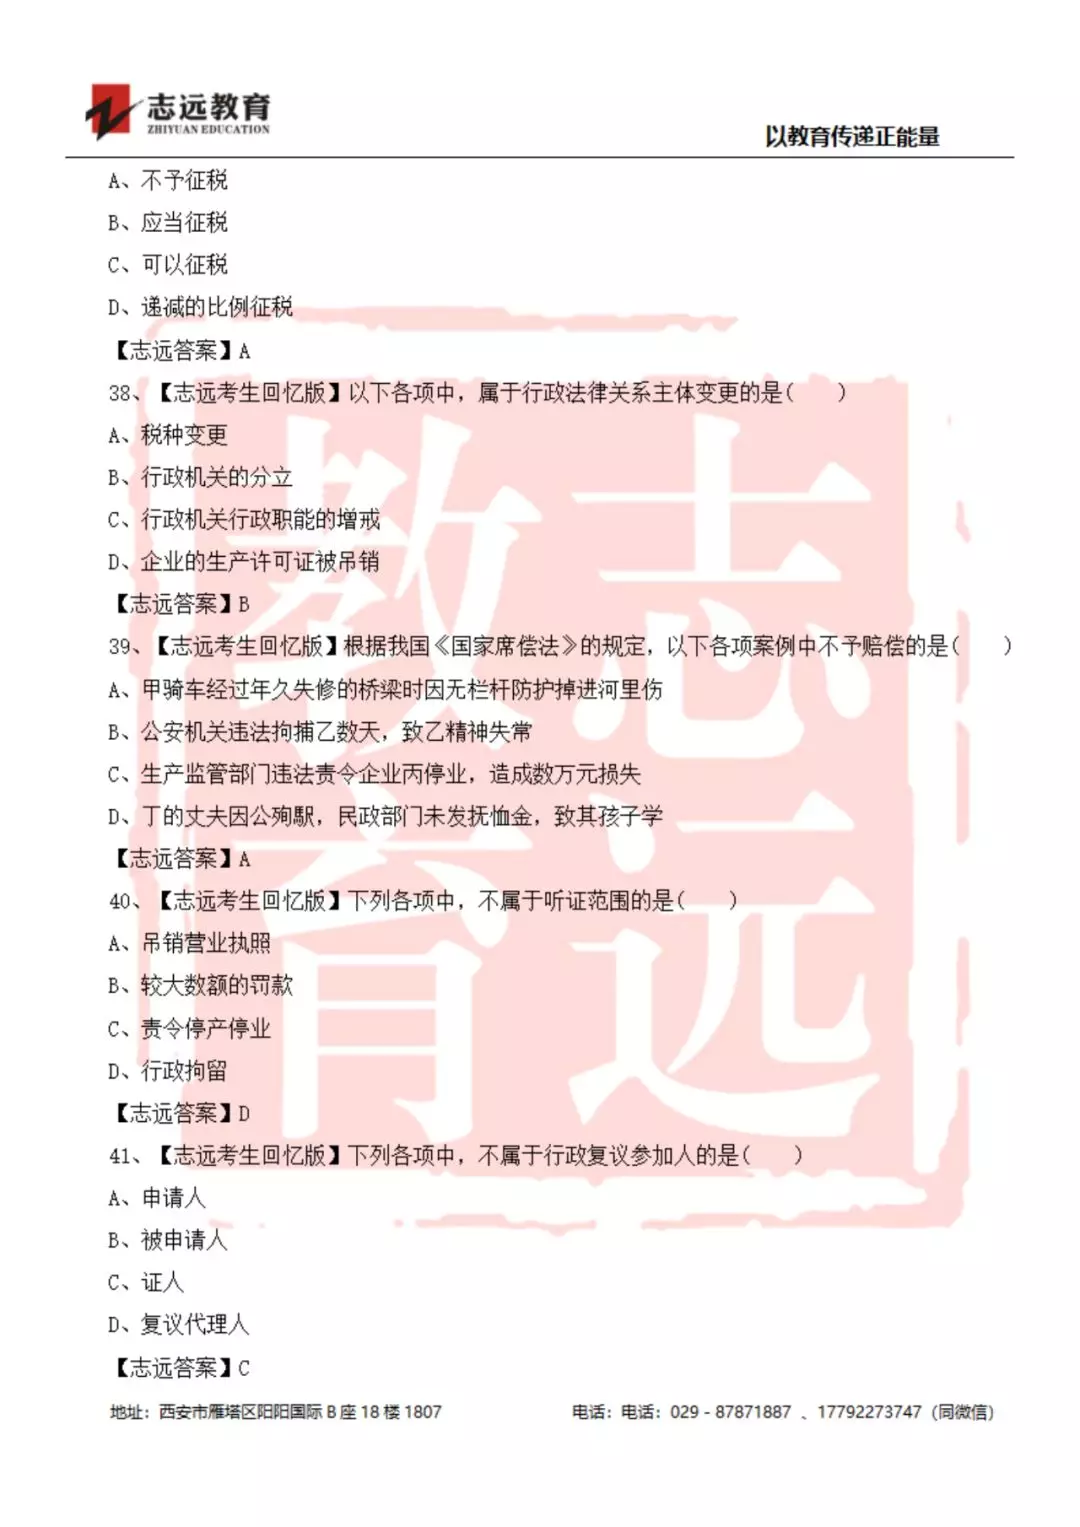 2019年陕西检察院书记员笔试试题-志远考生回忆版(图9)